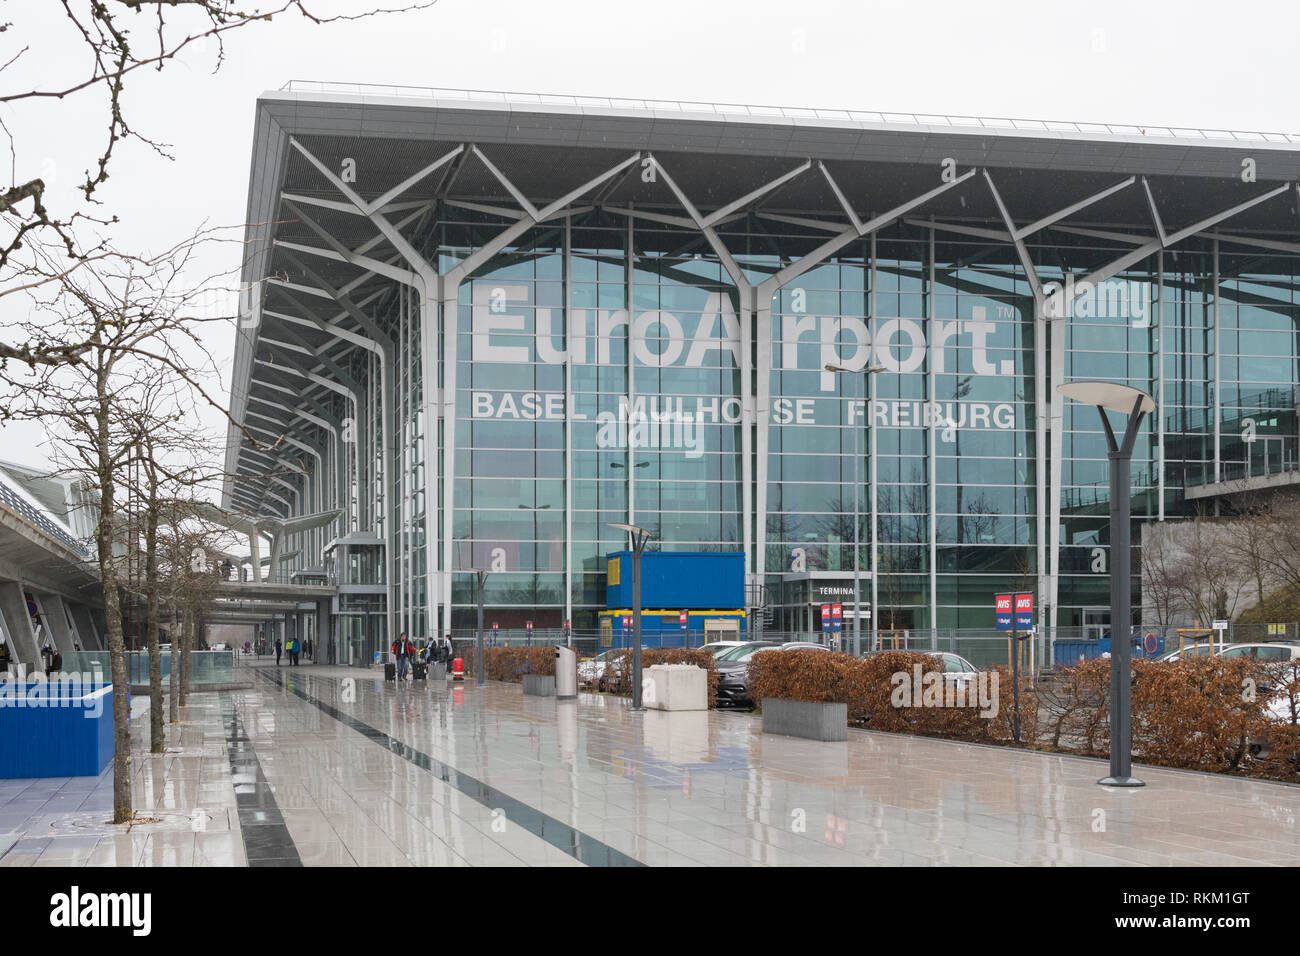 Euroairport basel mulhouse freiburg Banque de photographies et d'images à  haute résolution - Alamy